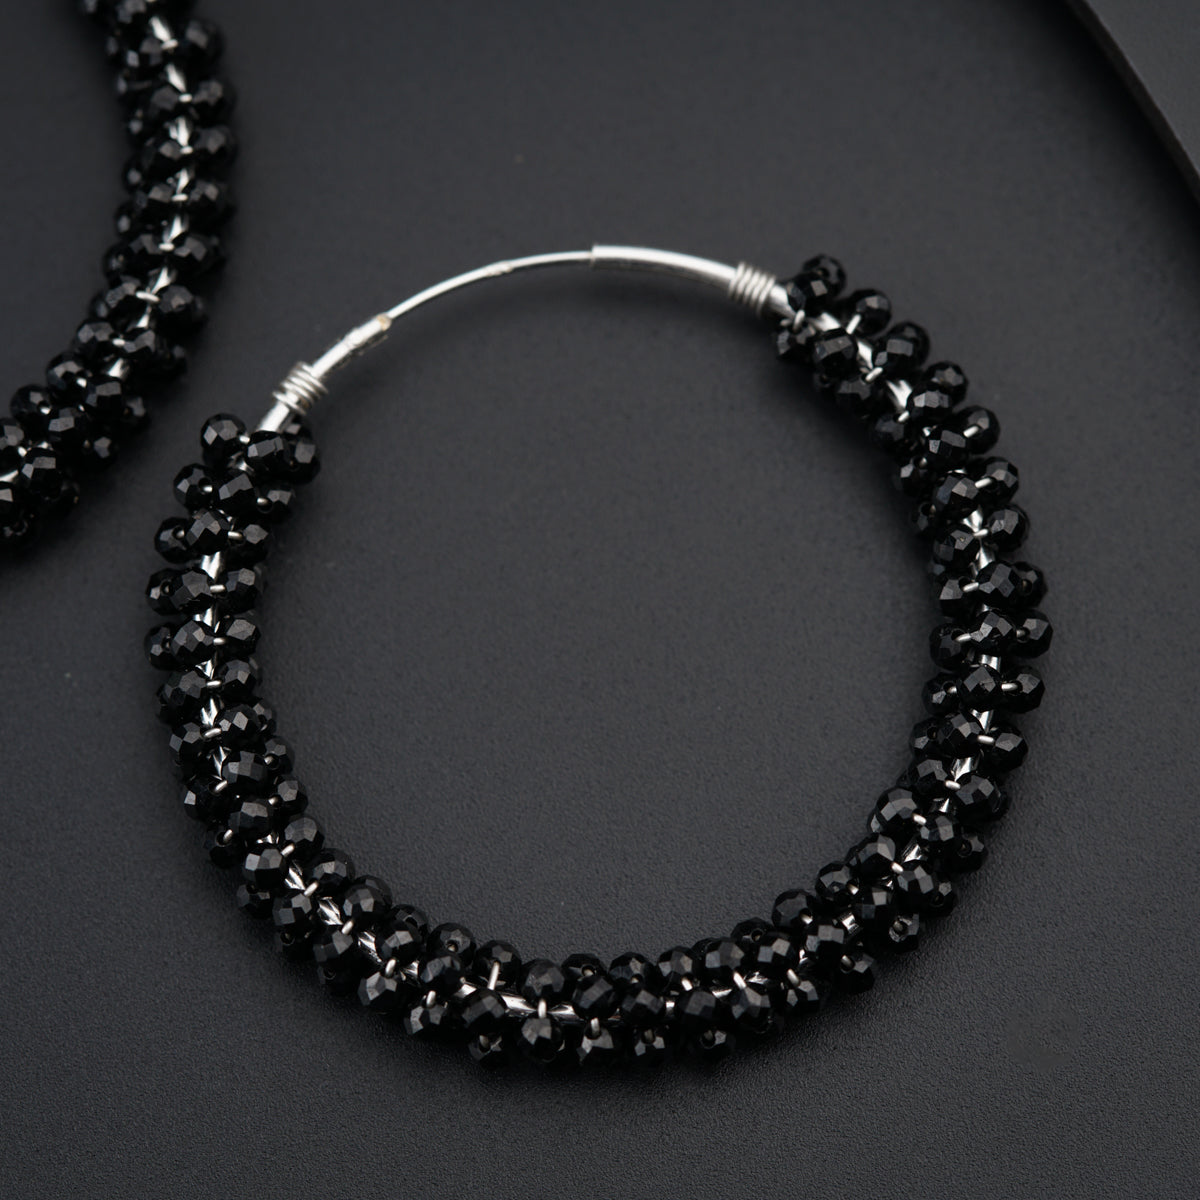 a pair of black beaded hoop earrings on a black surface